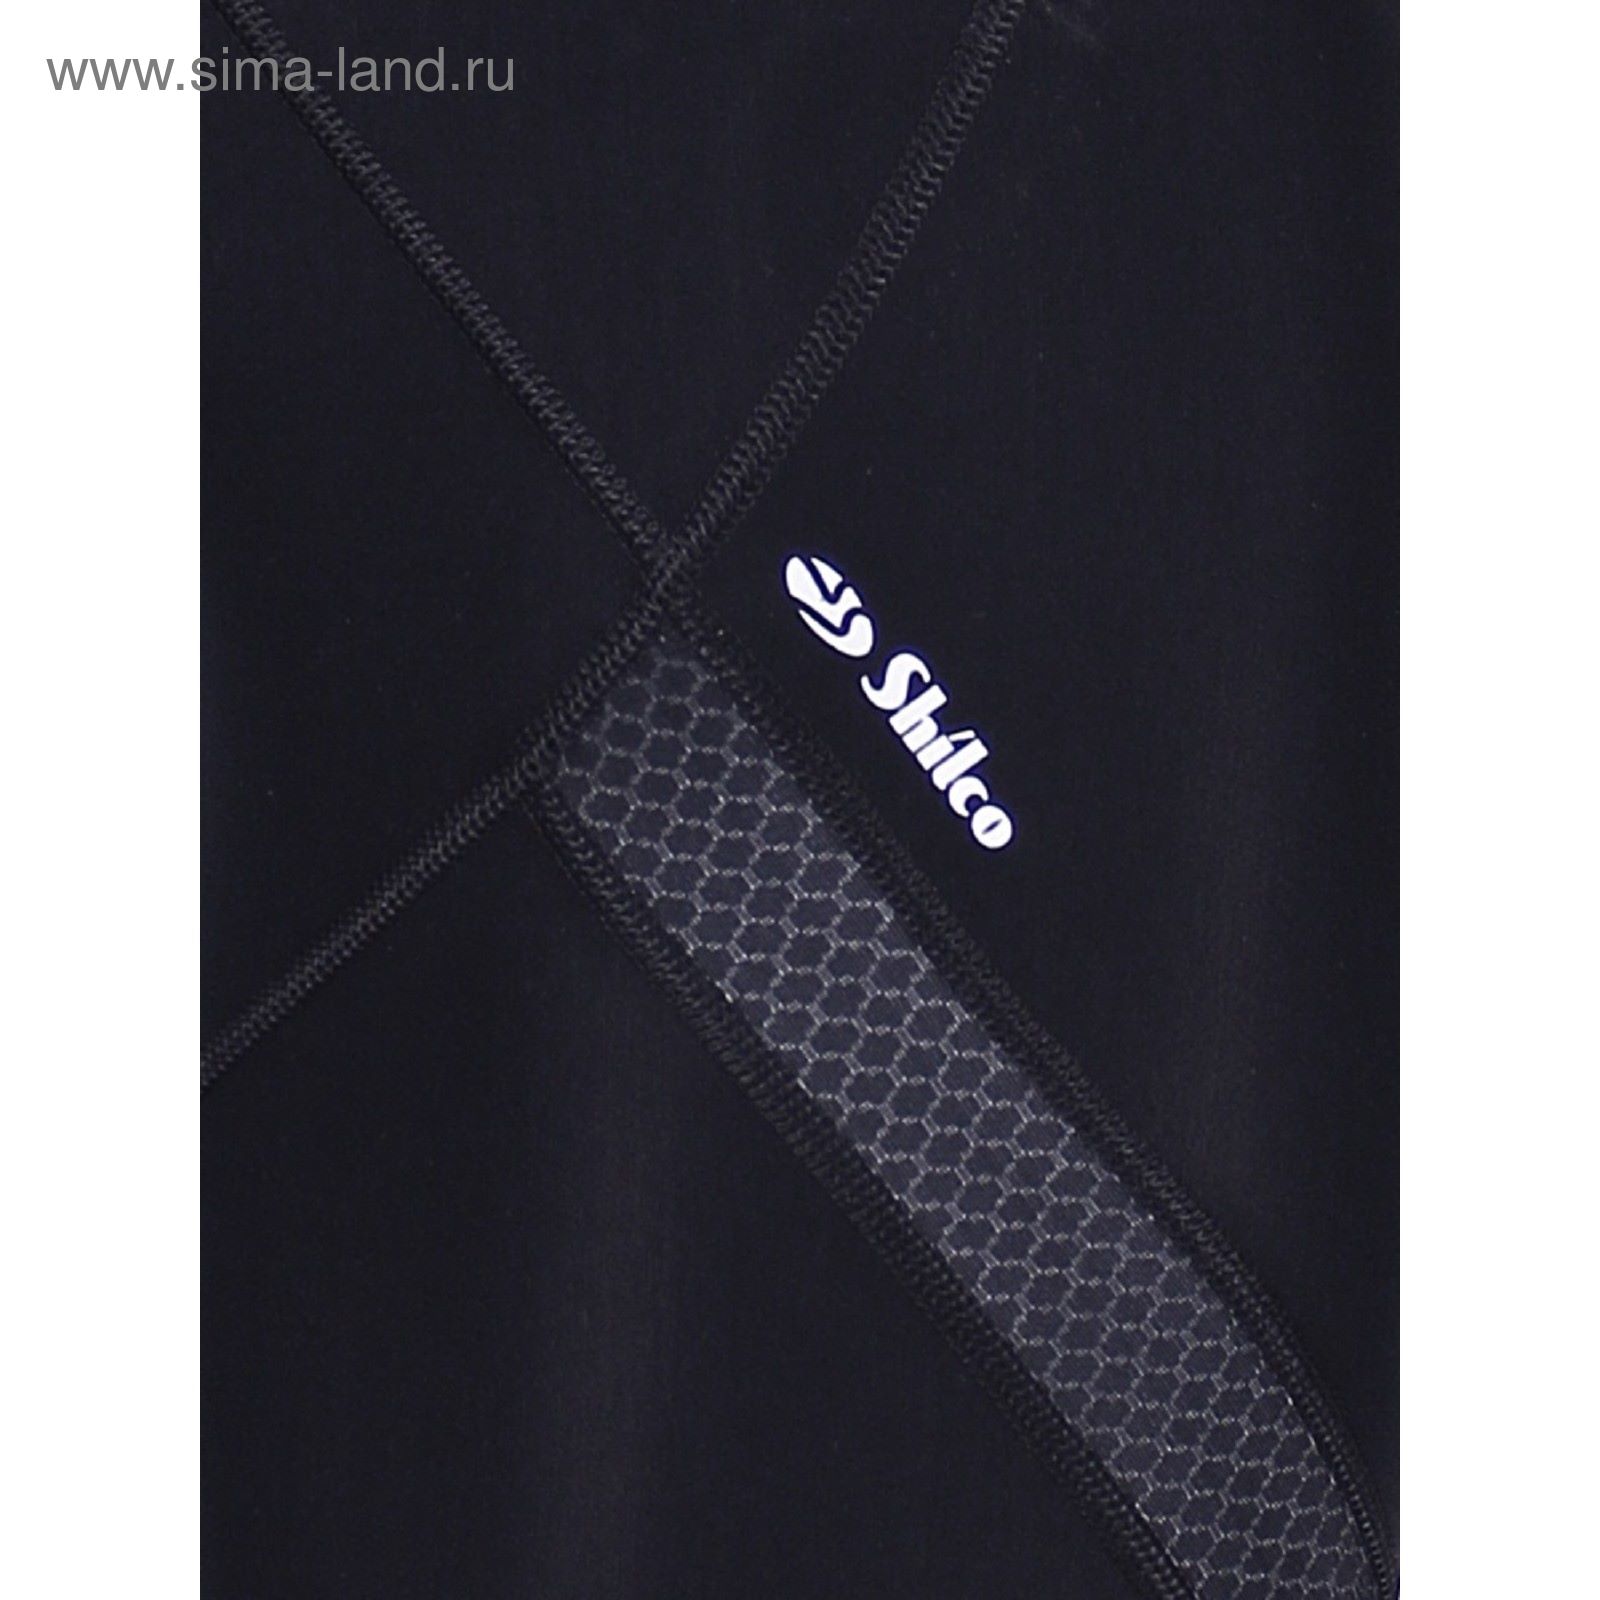 Бриджи спортивные компрессионные мужские арт.275F36 цвет чёрный, рост 170, р-р 46 (M)